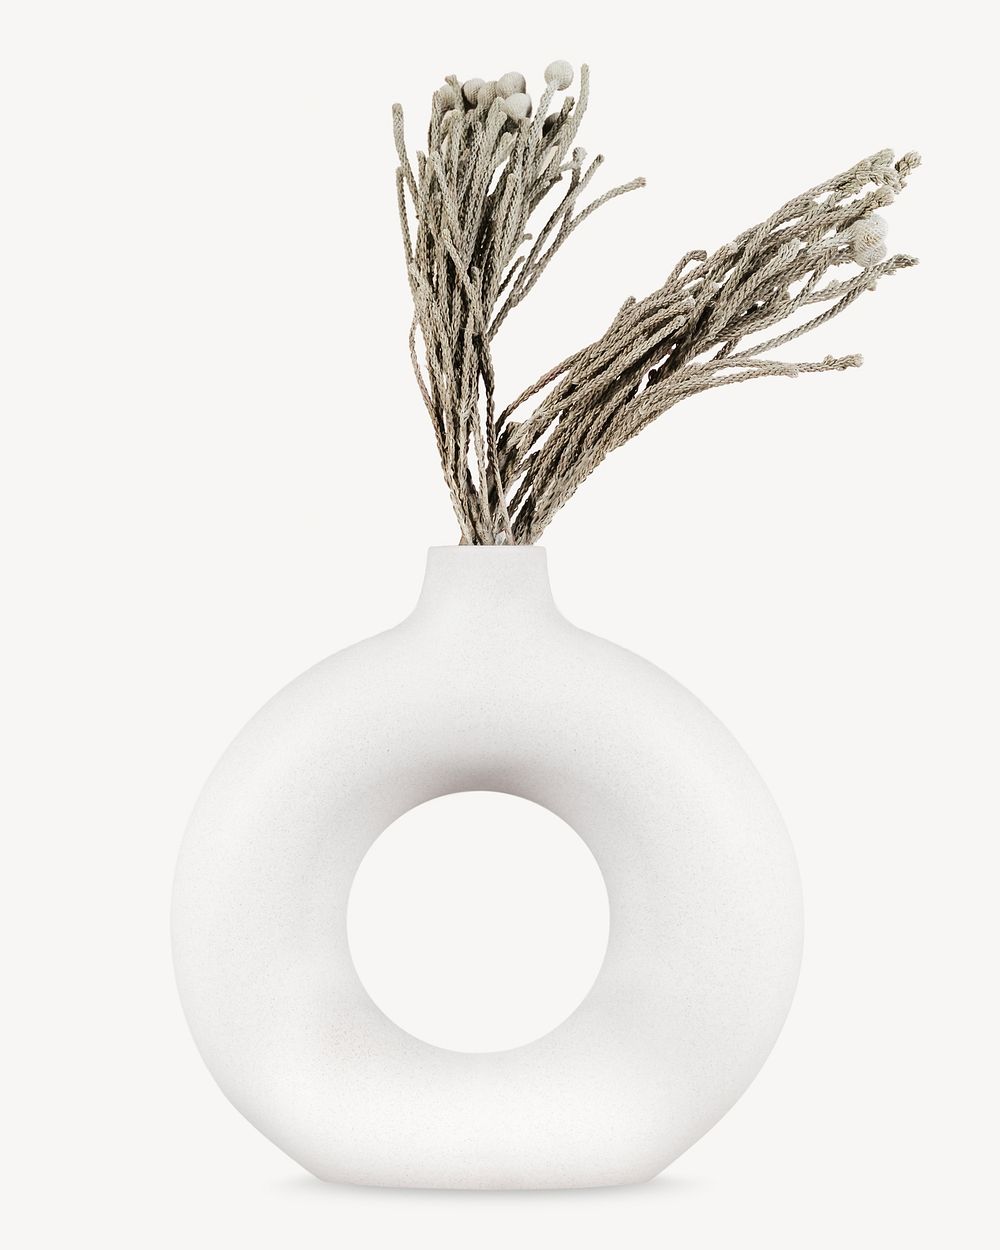 Aesthetic vase isolated image